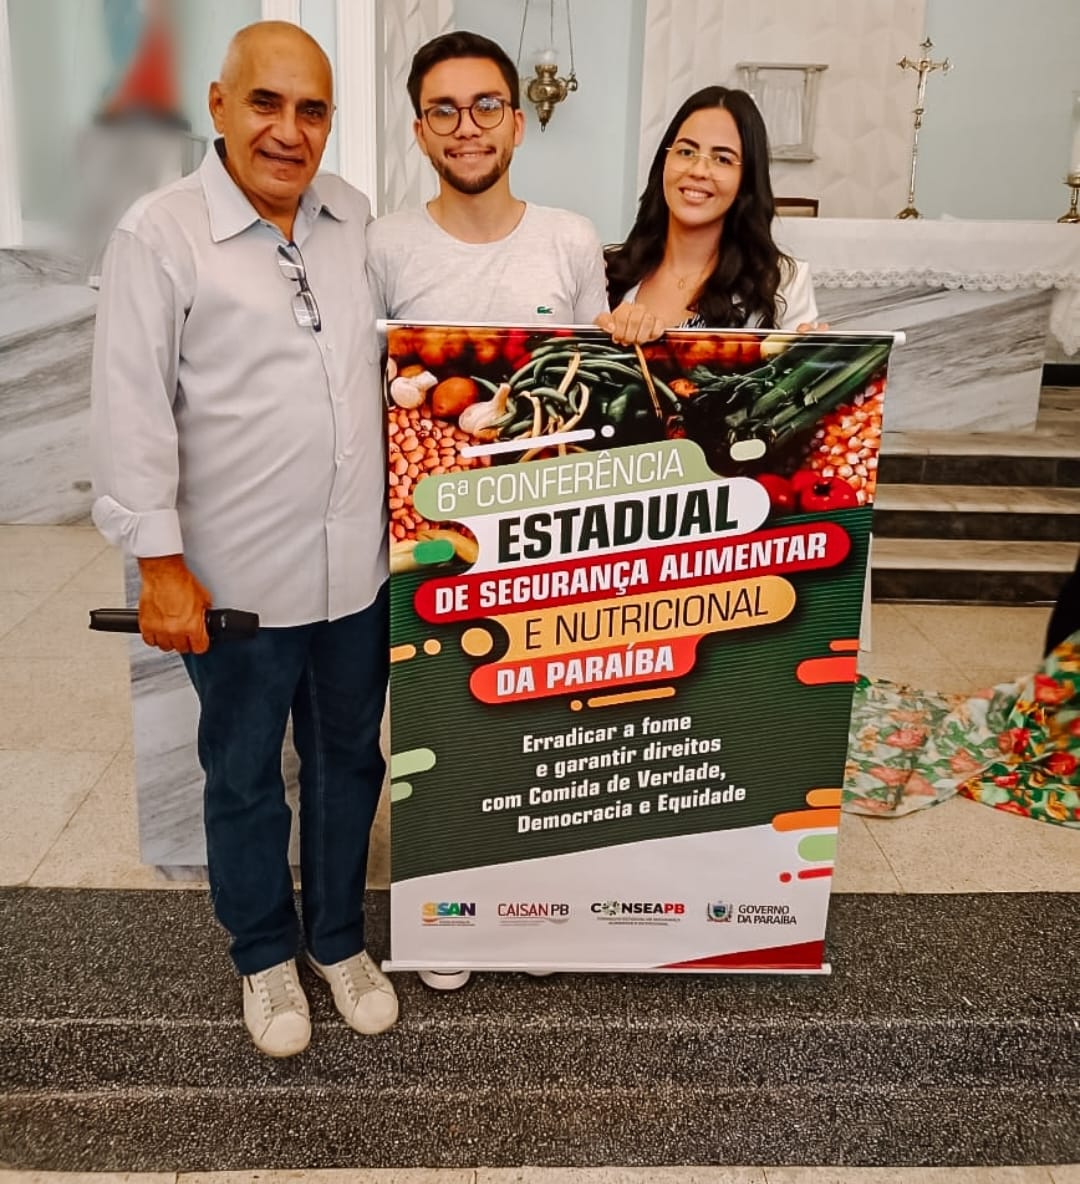 Representantes de Bananeiras participam da 6ª Conferência Regional de Segurança Alimentar e Nutricional da Paraíba, etapa brejo